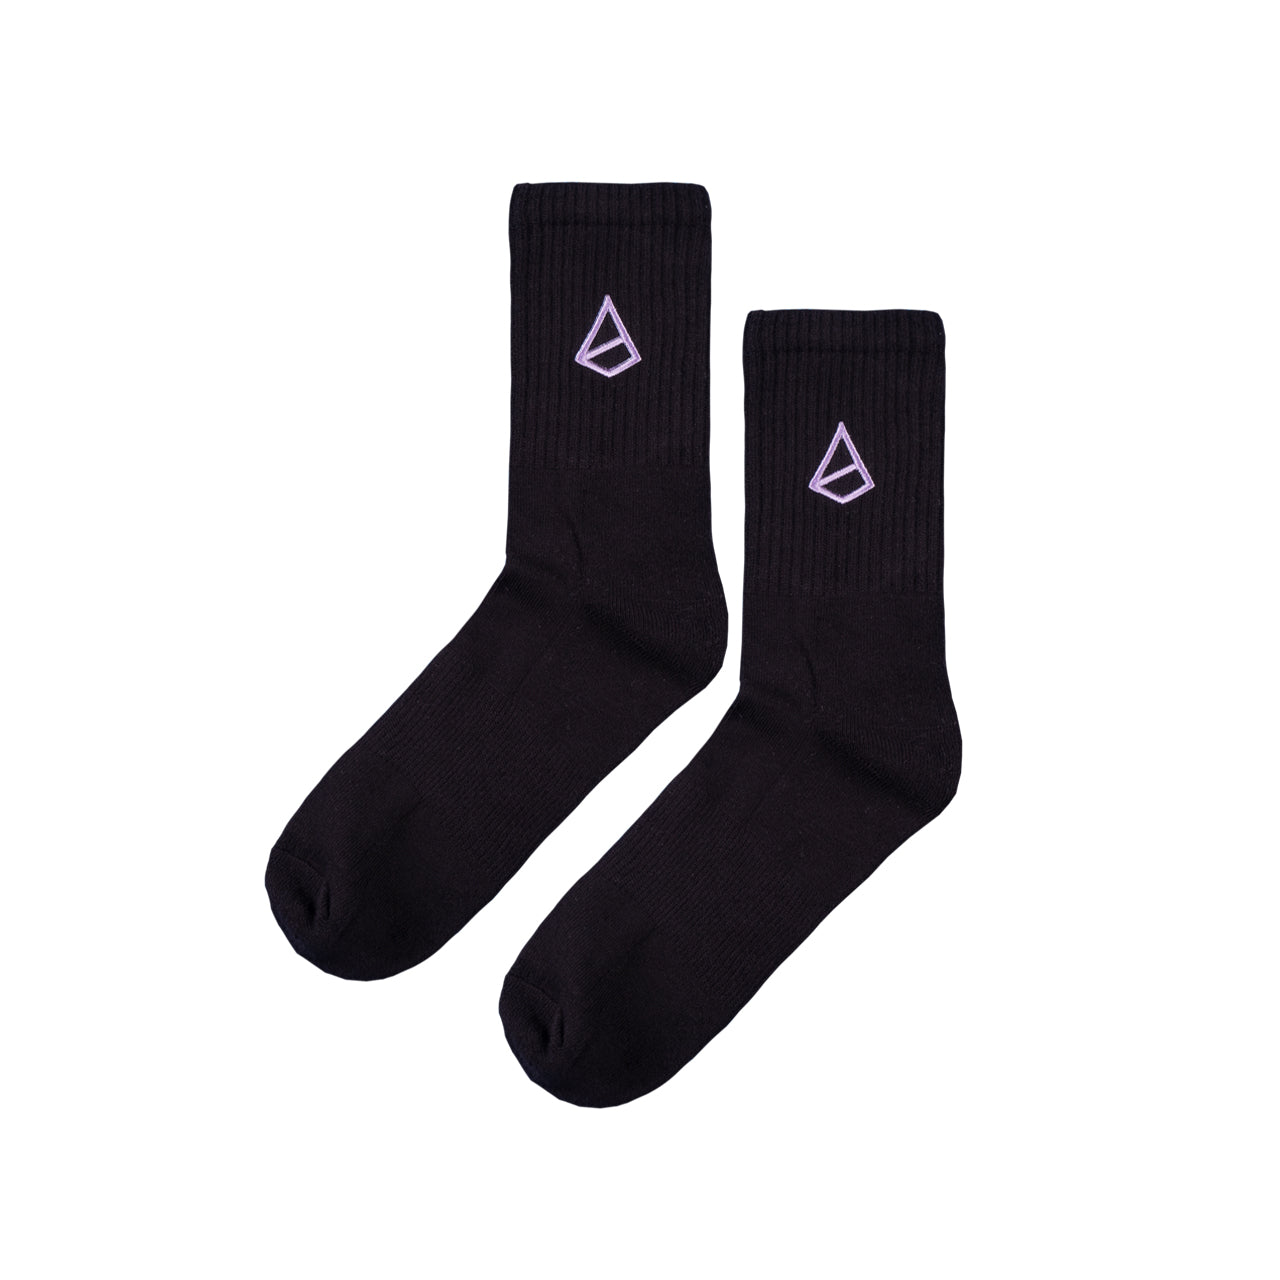 Snash - Emblem Socks Black and Lavender